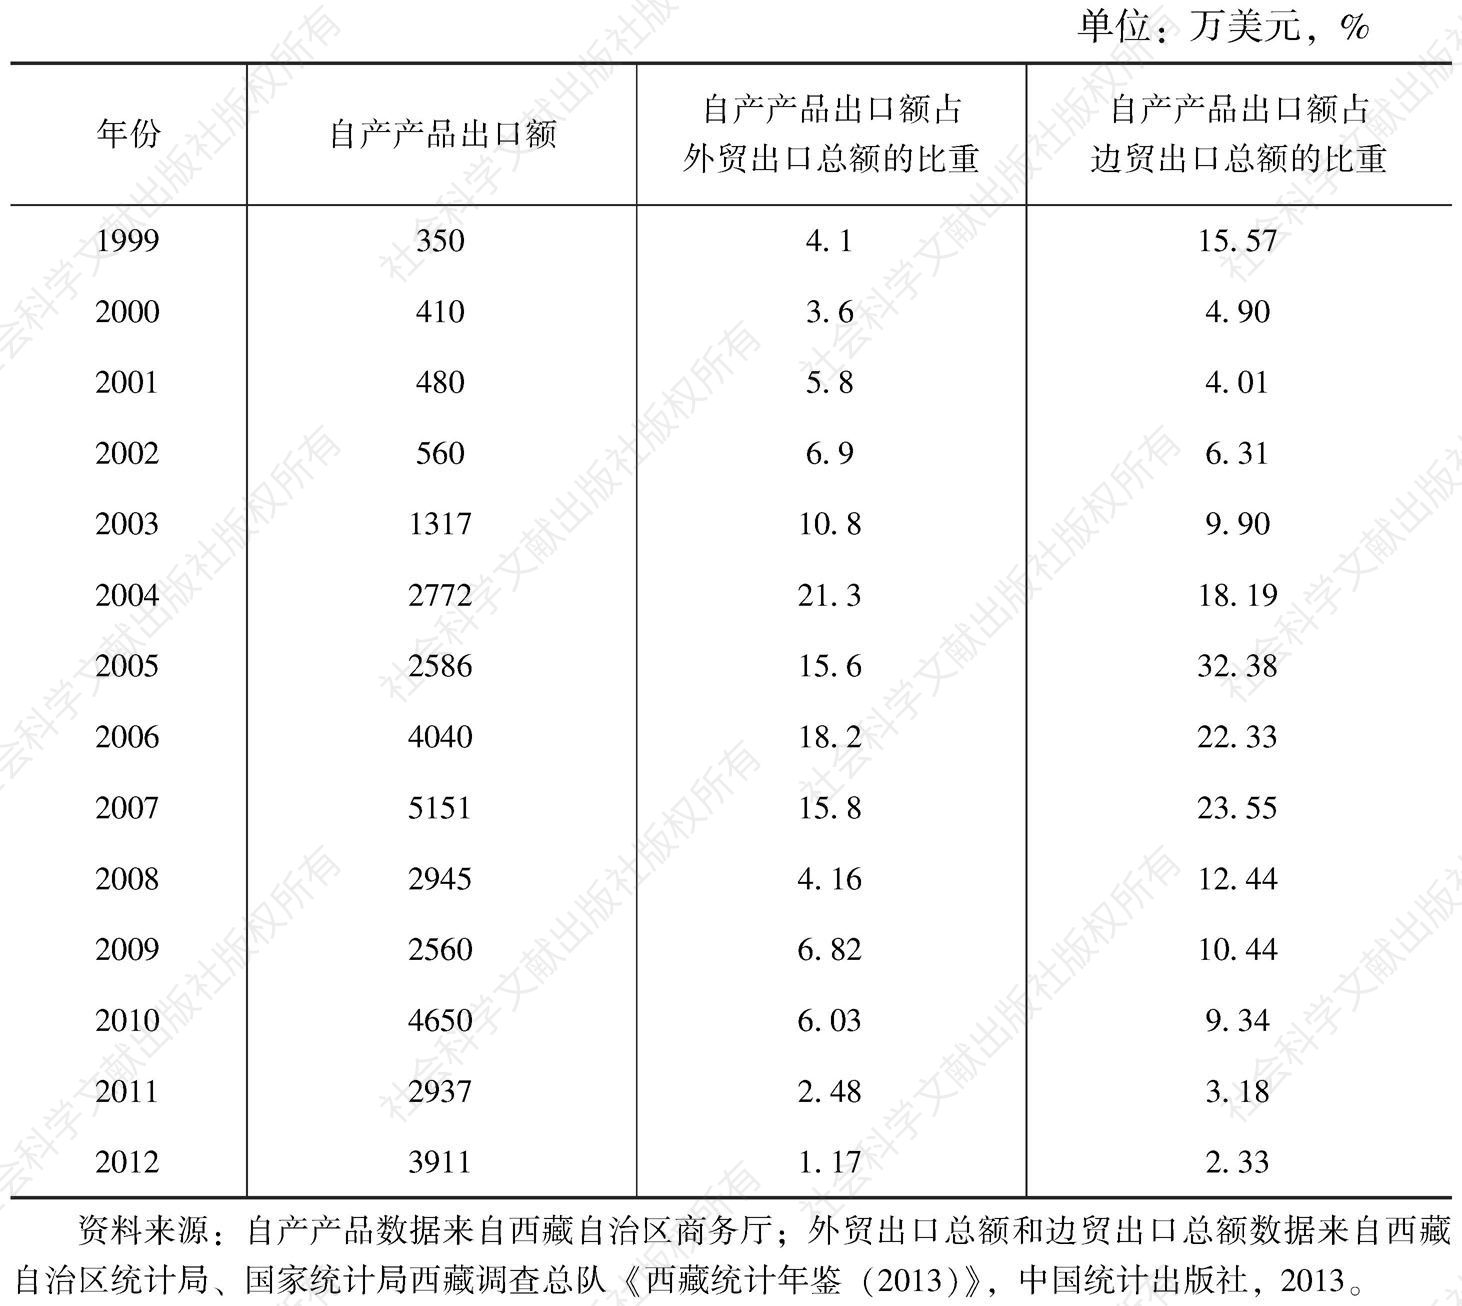 表2-17 自产产品出口在西藏外贸出口中的地位